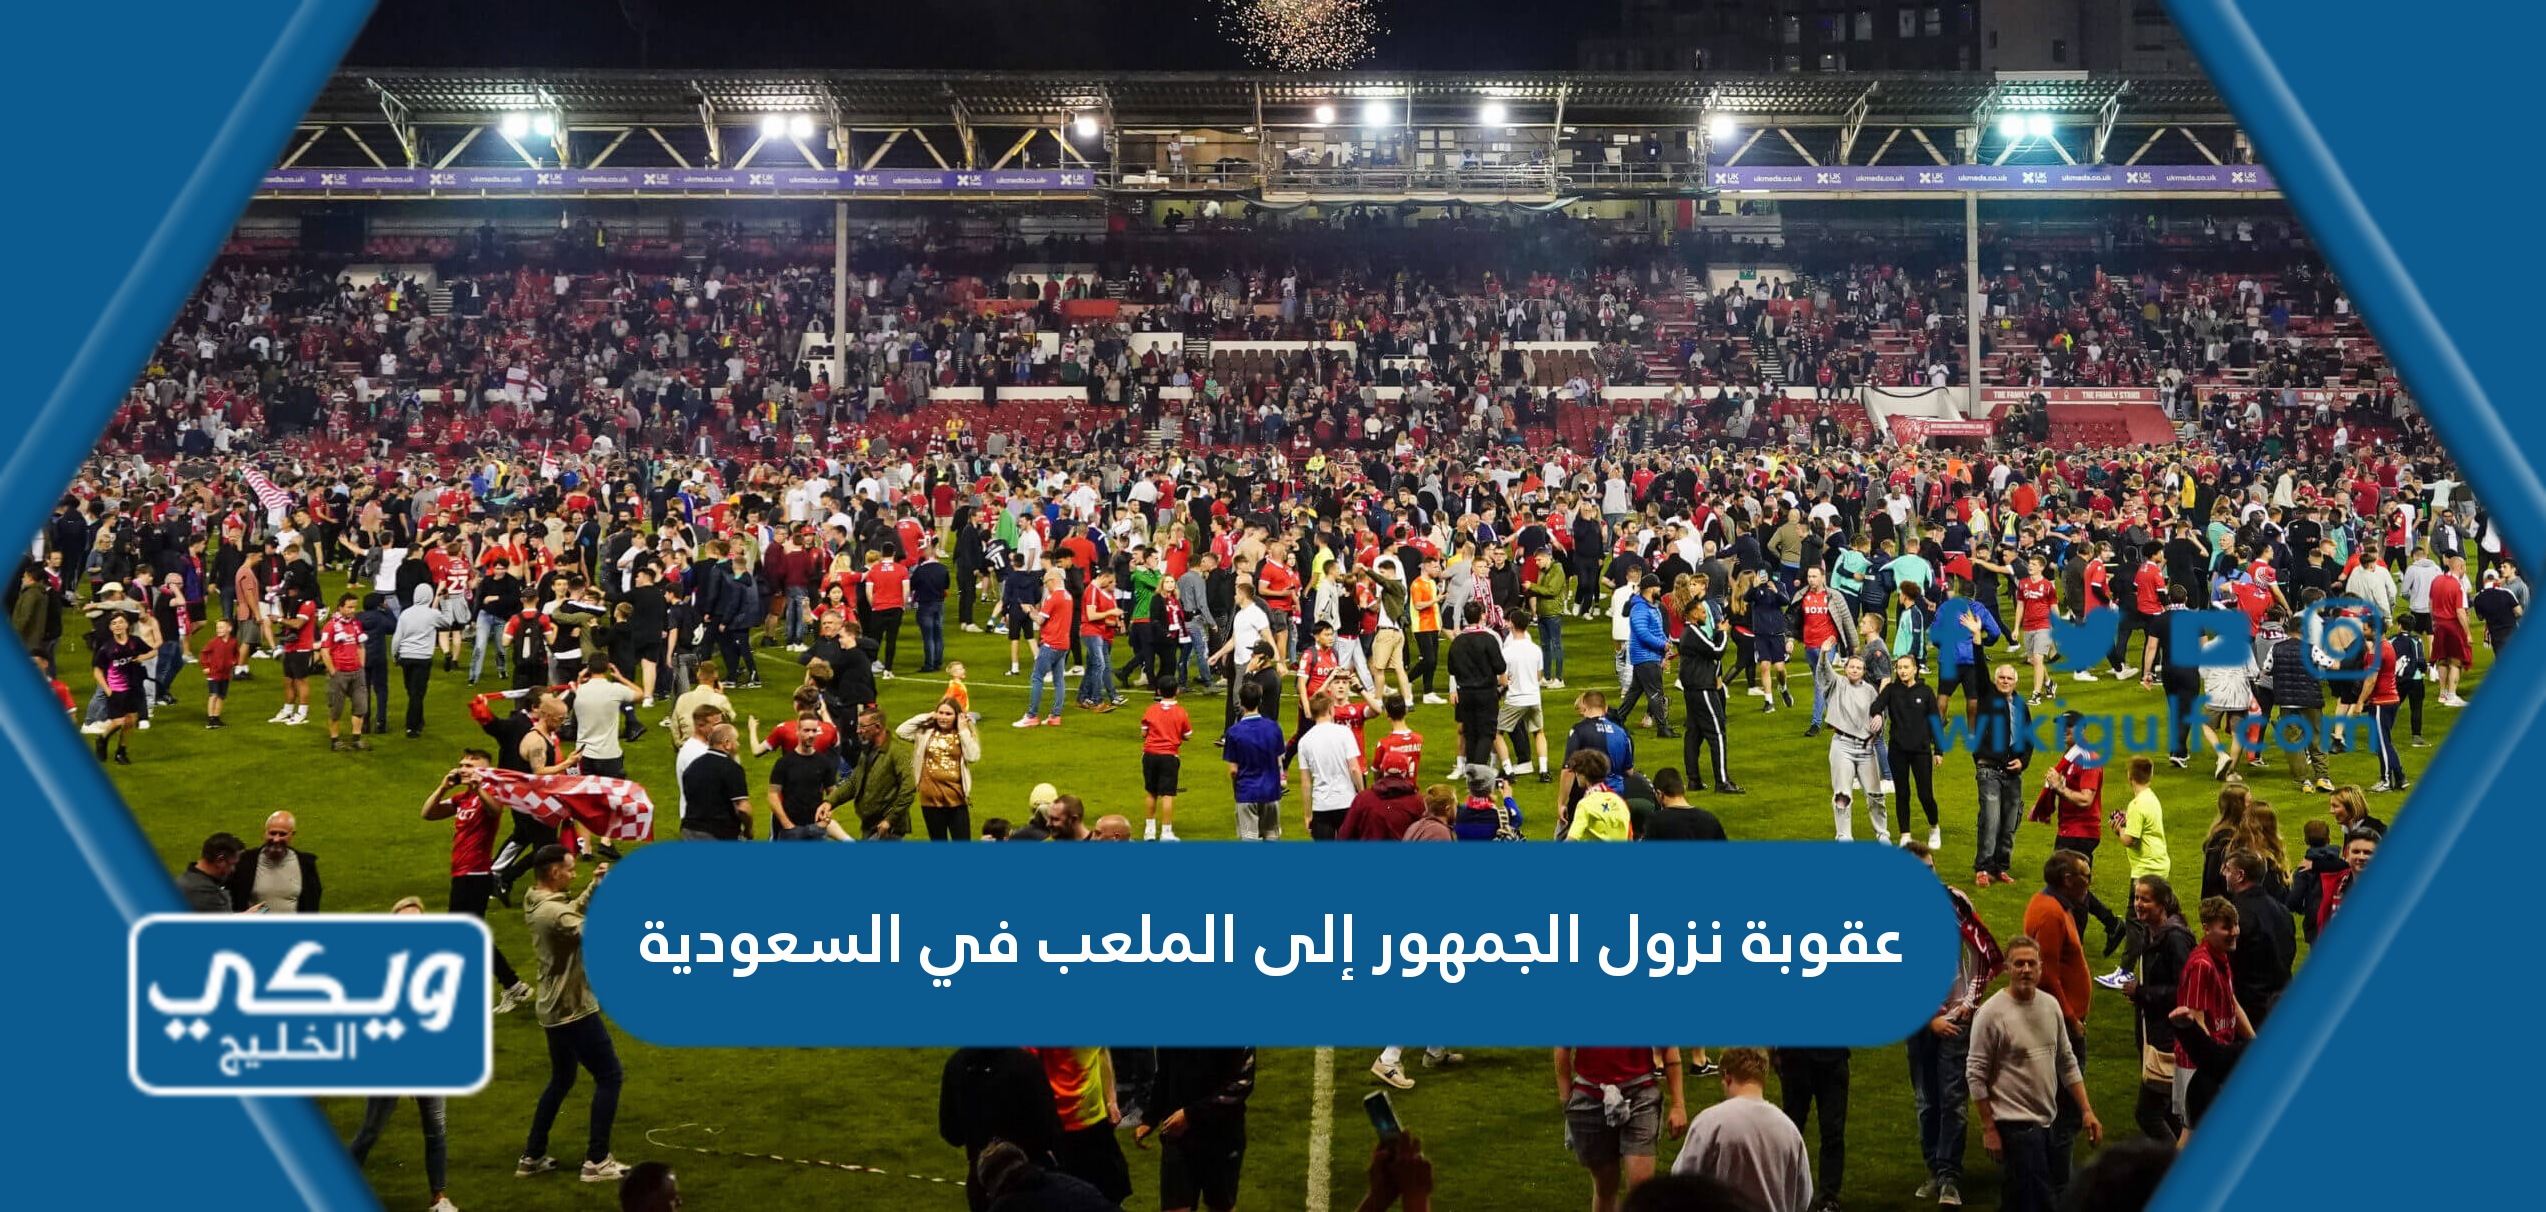 عقوبة نزول الجمهور إلى الملعب في السعودية